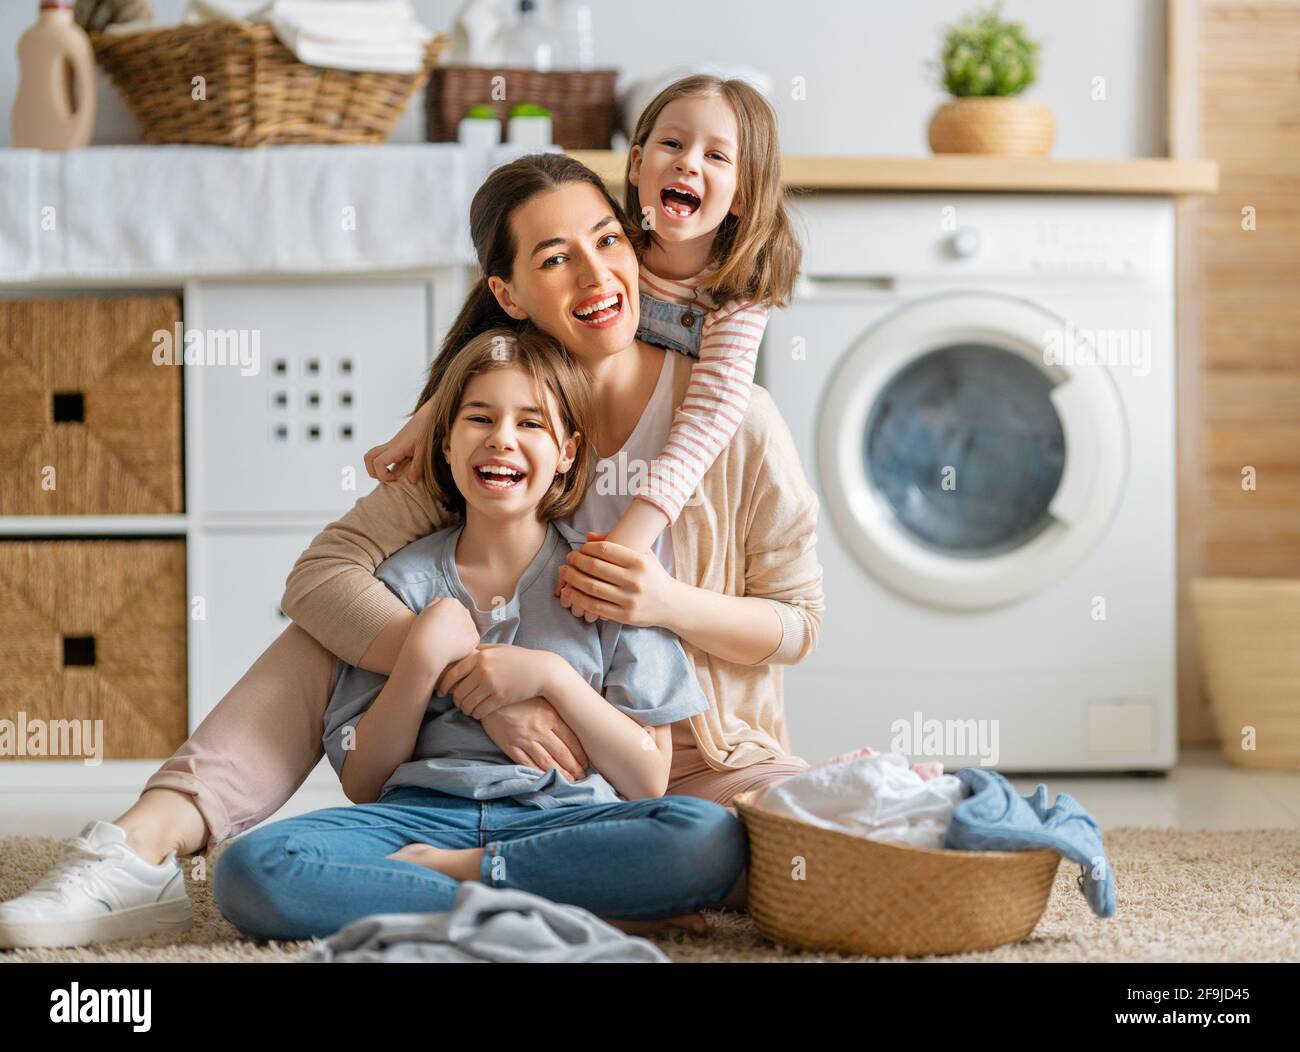 Bella giovane donna e bambini ragazze aiutanti poco stanno avendo divertimento e sorridendo mentre facendo lavanderia a casa. Foto Stock